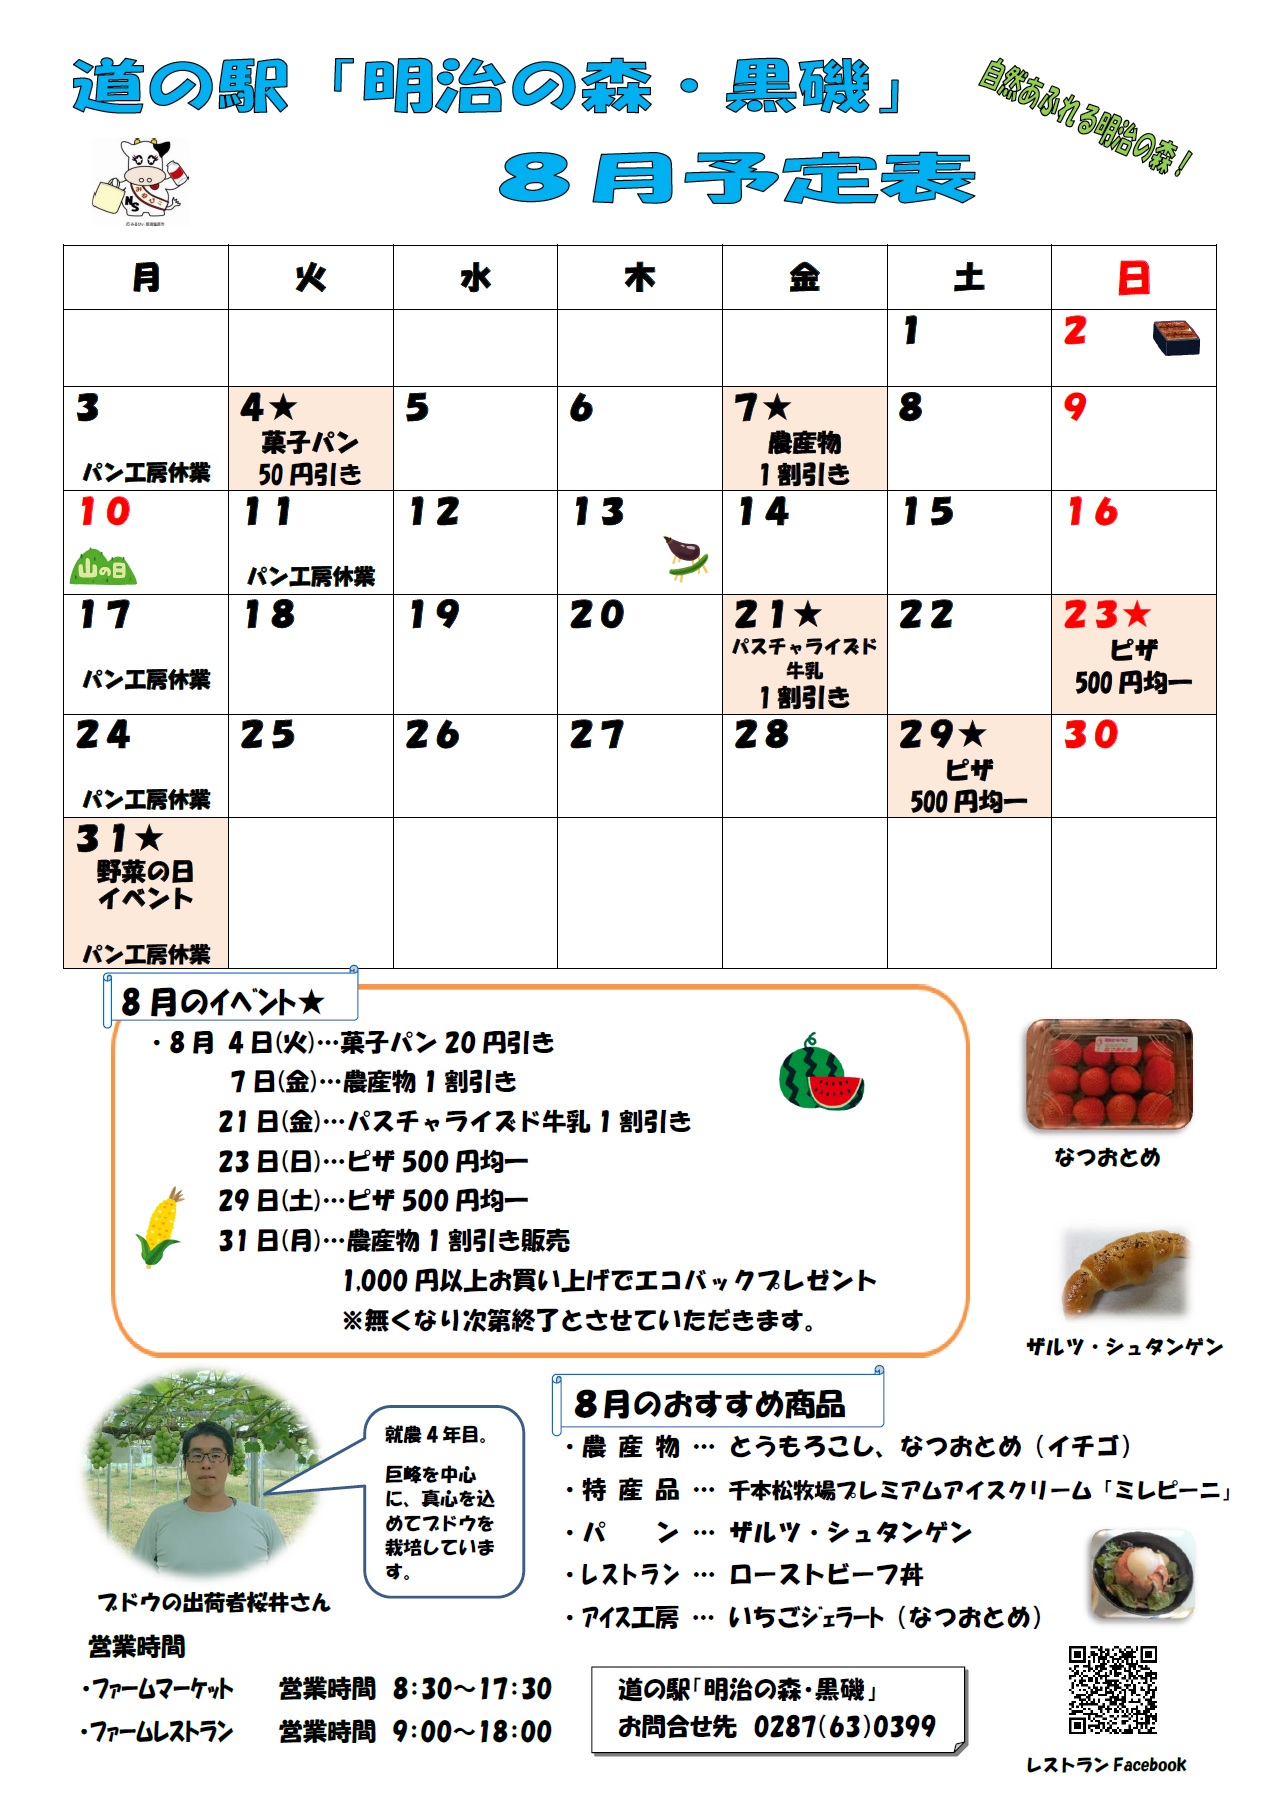 道の駅 明治の森 黒磯 8月カレンダーのお知らせ 関東 道の駅 公式ホームページ